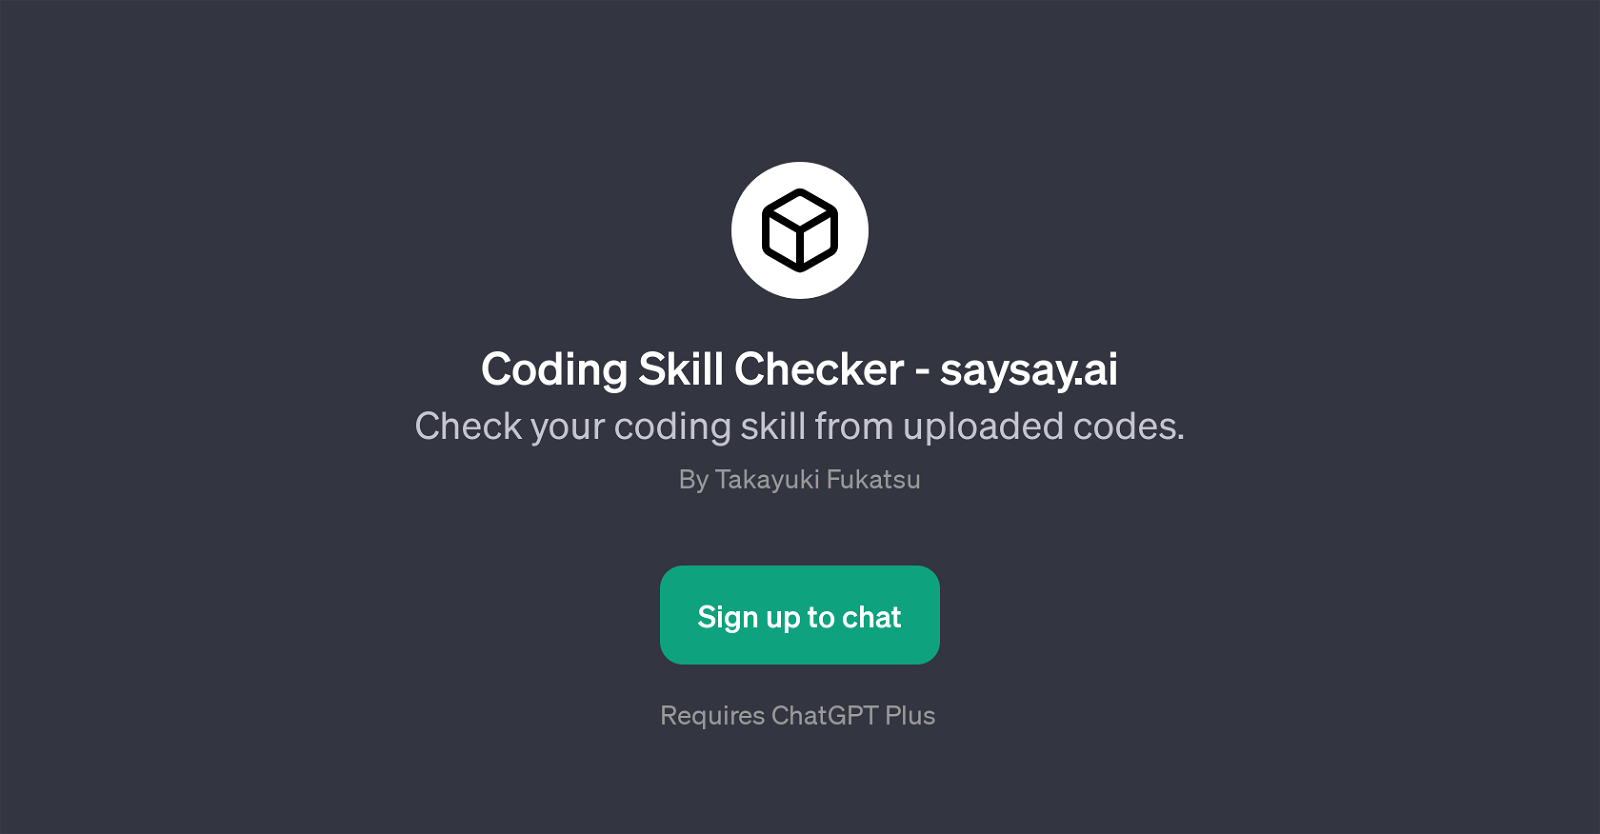 Coding Skill Checker - saysay.ai website